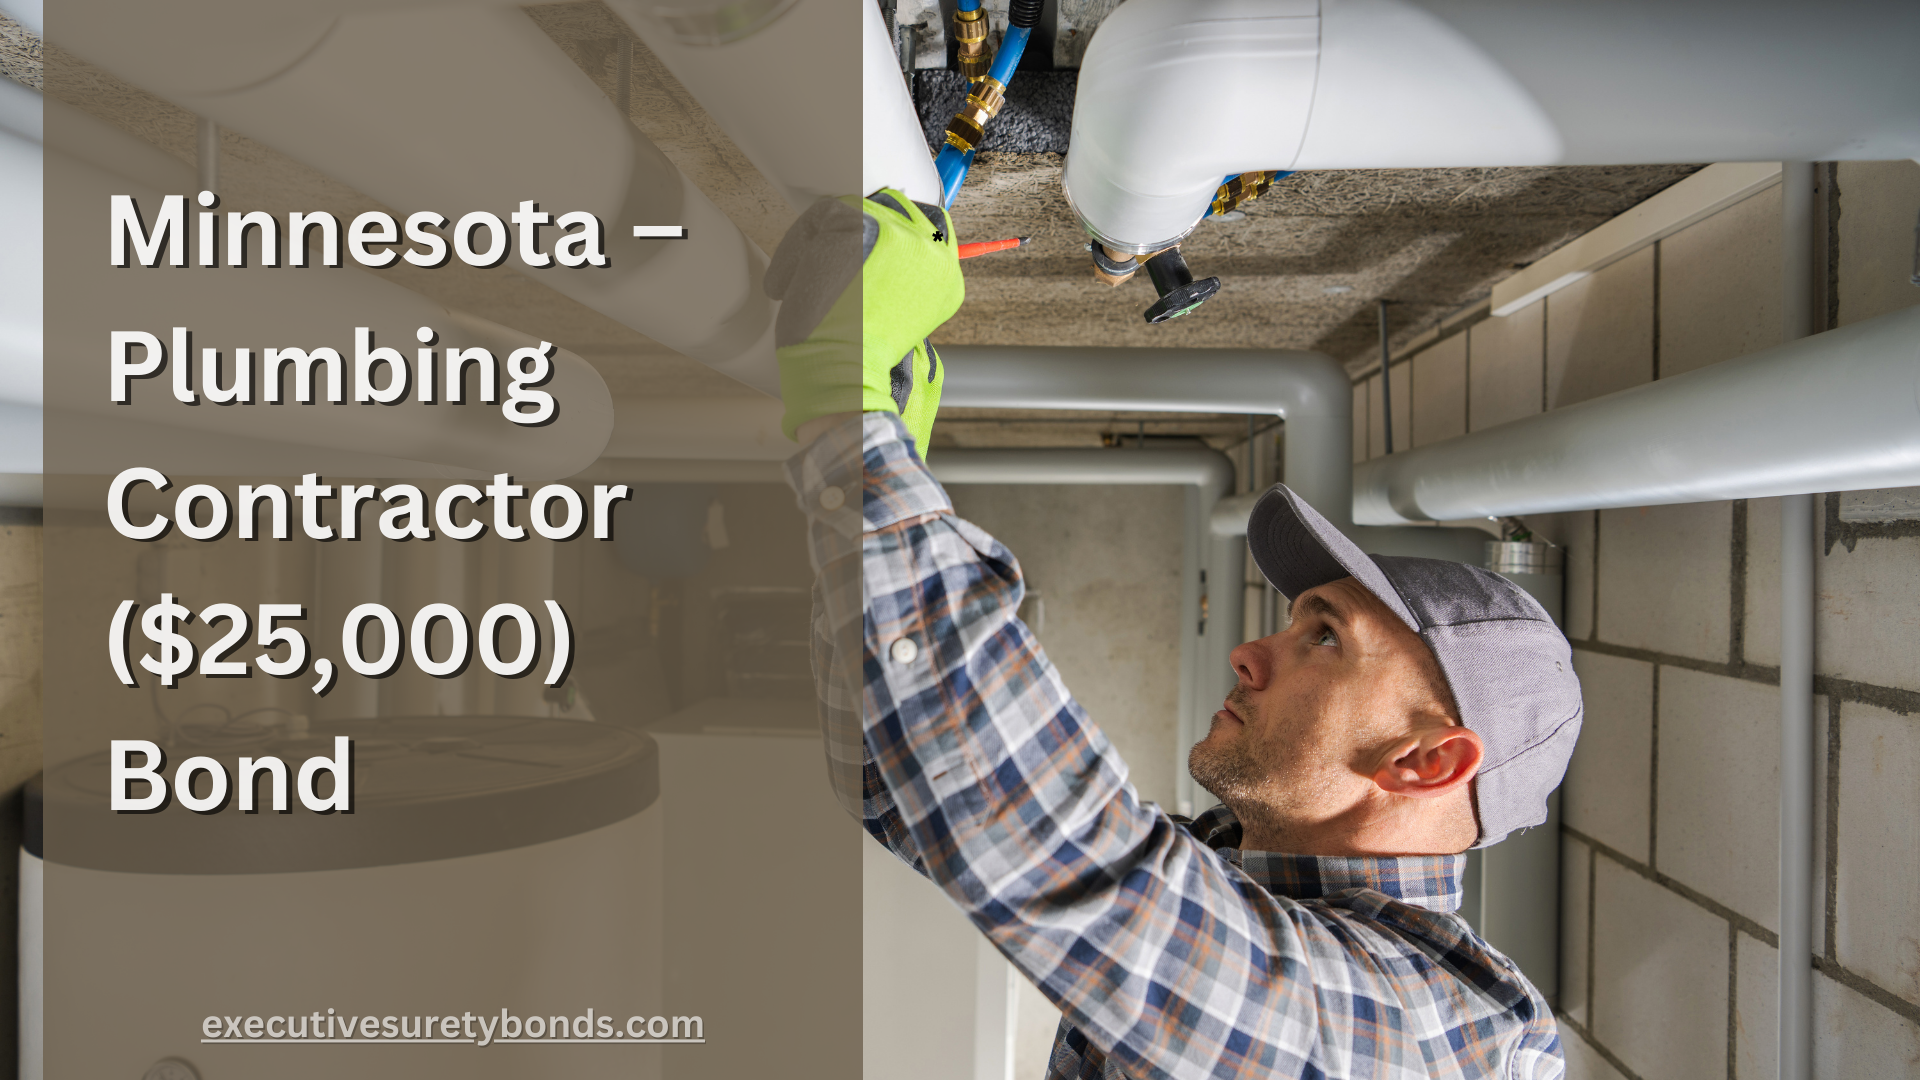 Minnesota – Plumbing Contractor ($25,000) Bond